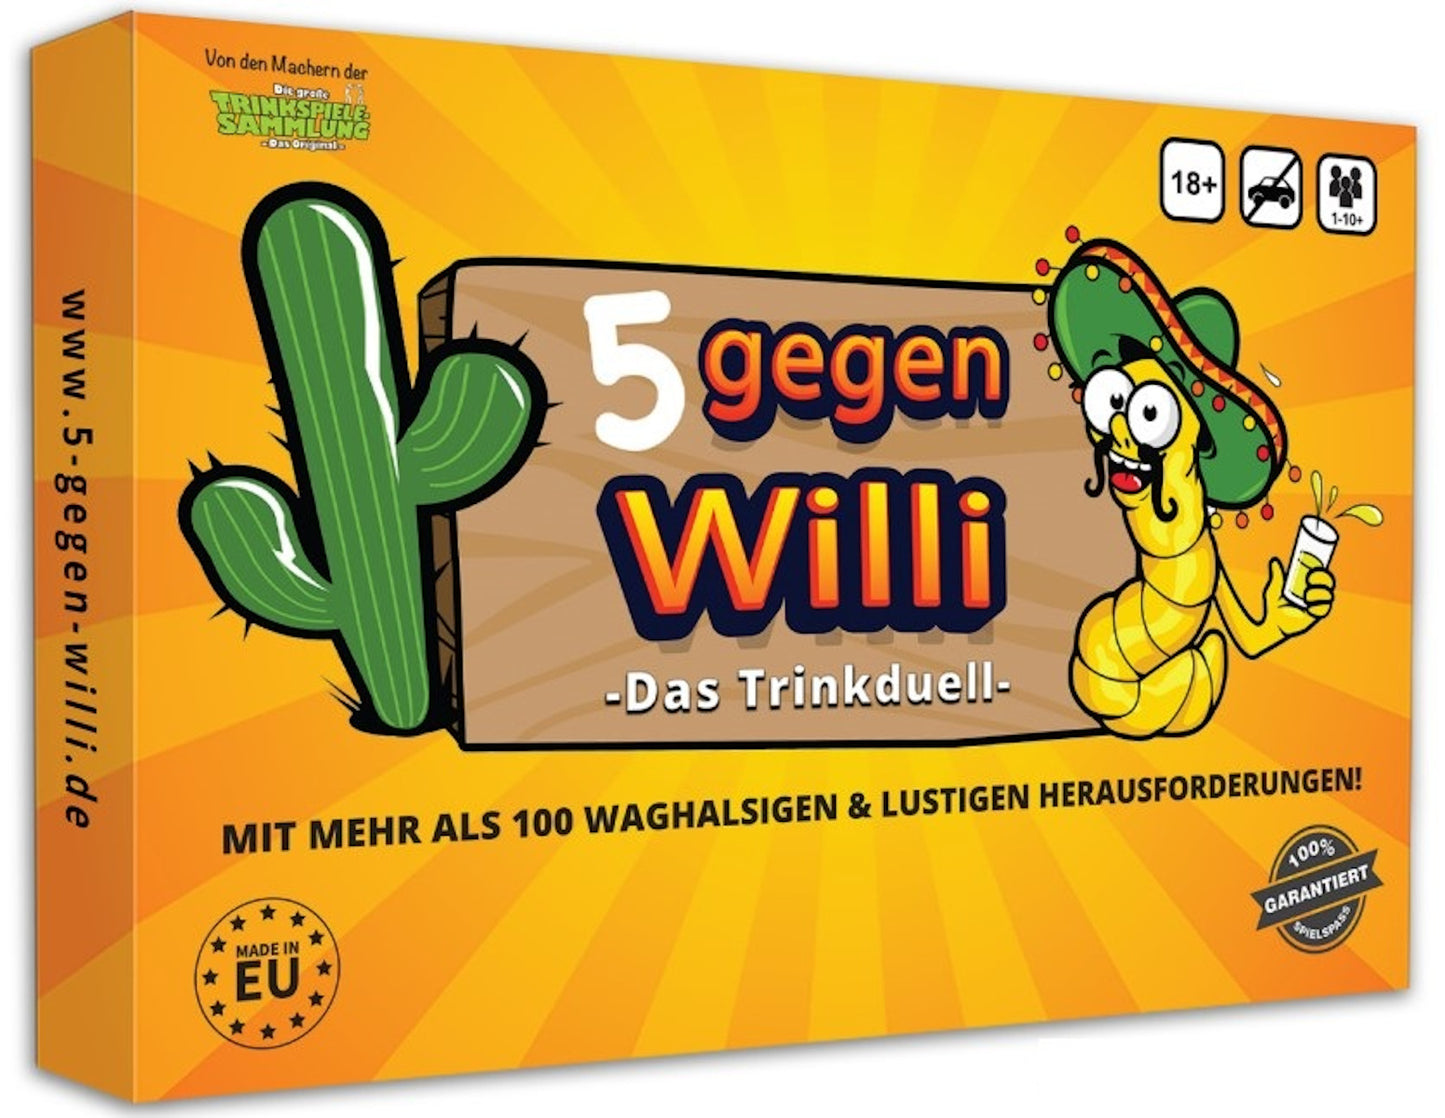 Deluxe Bundle Die große Trinkspielesammlung & 5 gegen Willi im Sparpaket!